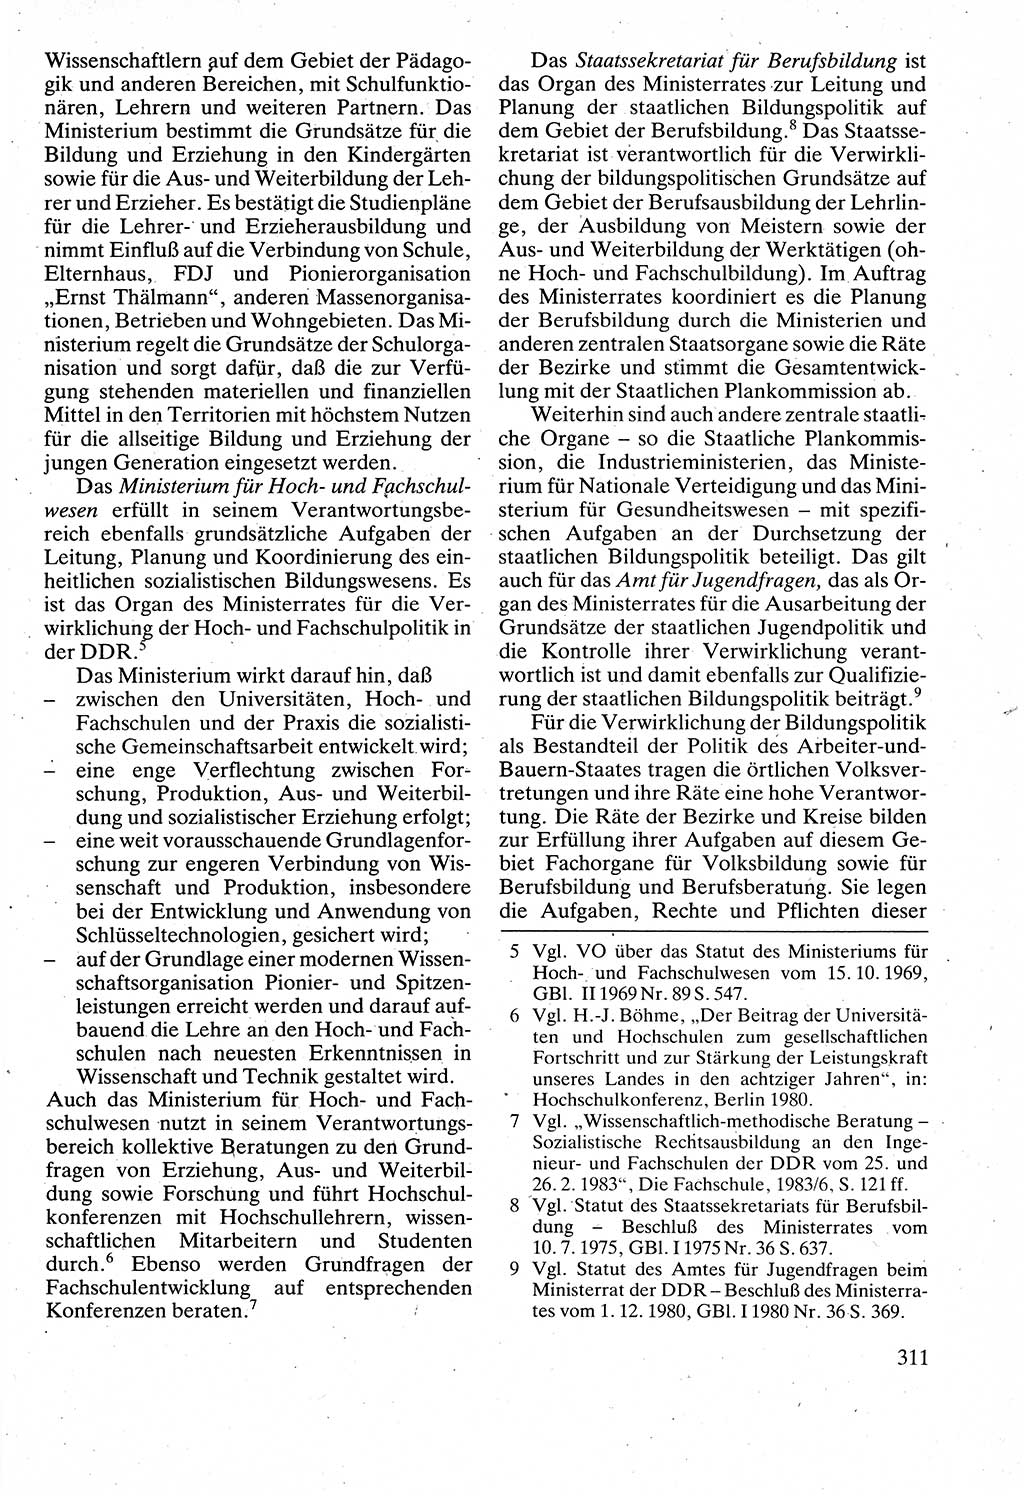 Verwaltungsrecht [Deutsche Demokratische Republik (DDR)], Lehrbuch 1988, Seite 311 (Verw.-R. DDR Lb. 1988, S. 311)